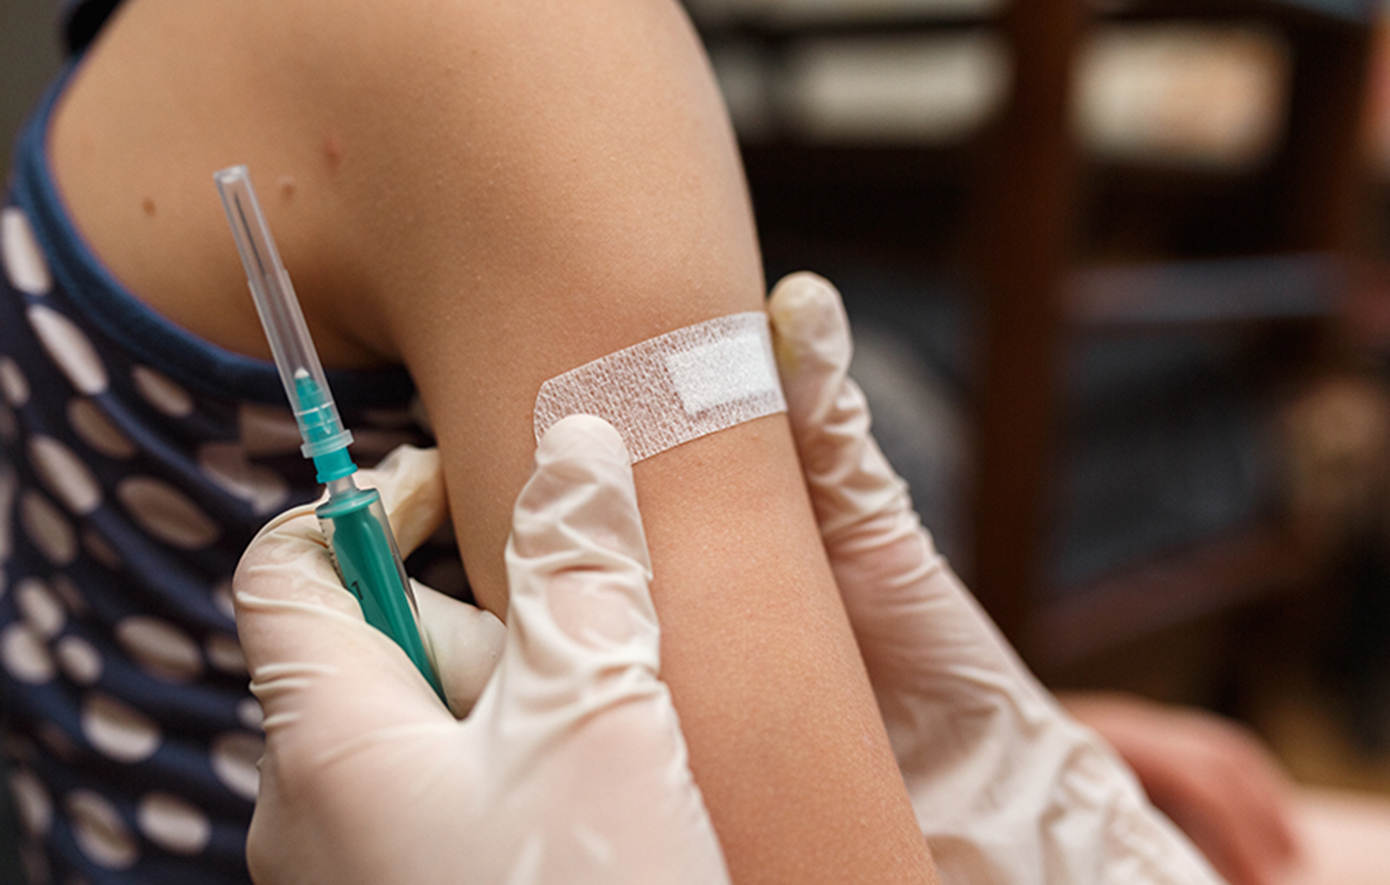 ΠΟΥ: Τουλάχιστον 154 εκατομμύρια ζωές σώθηκαν χάρη στα εμβόλια τα τελευταία 50 χρόνια